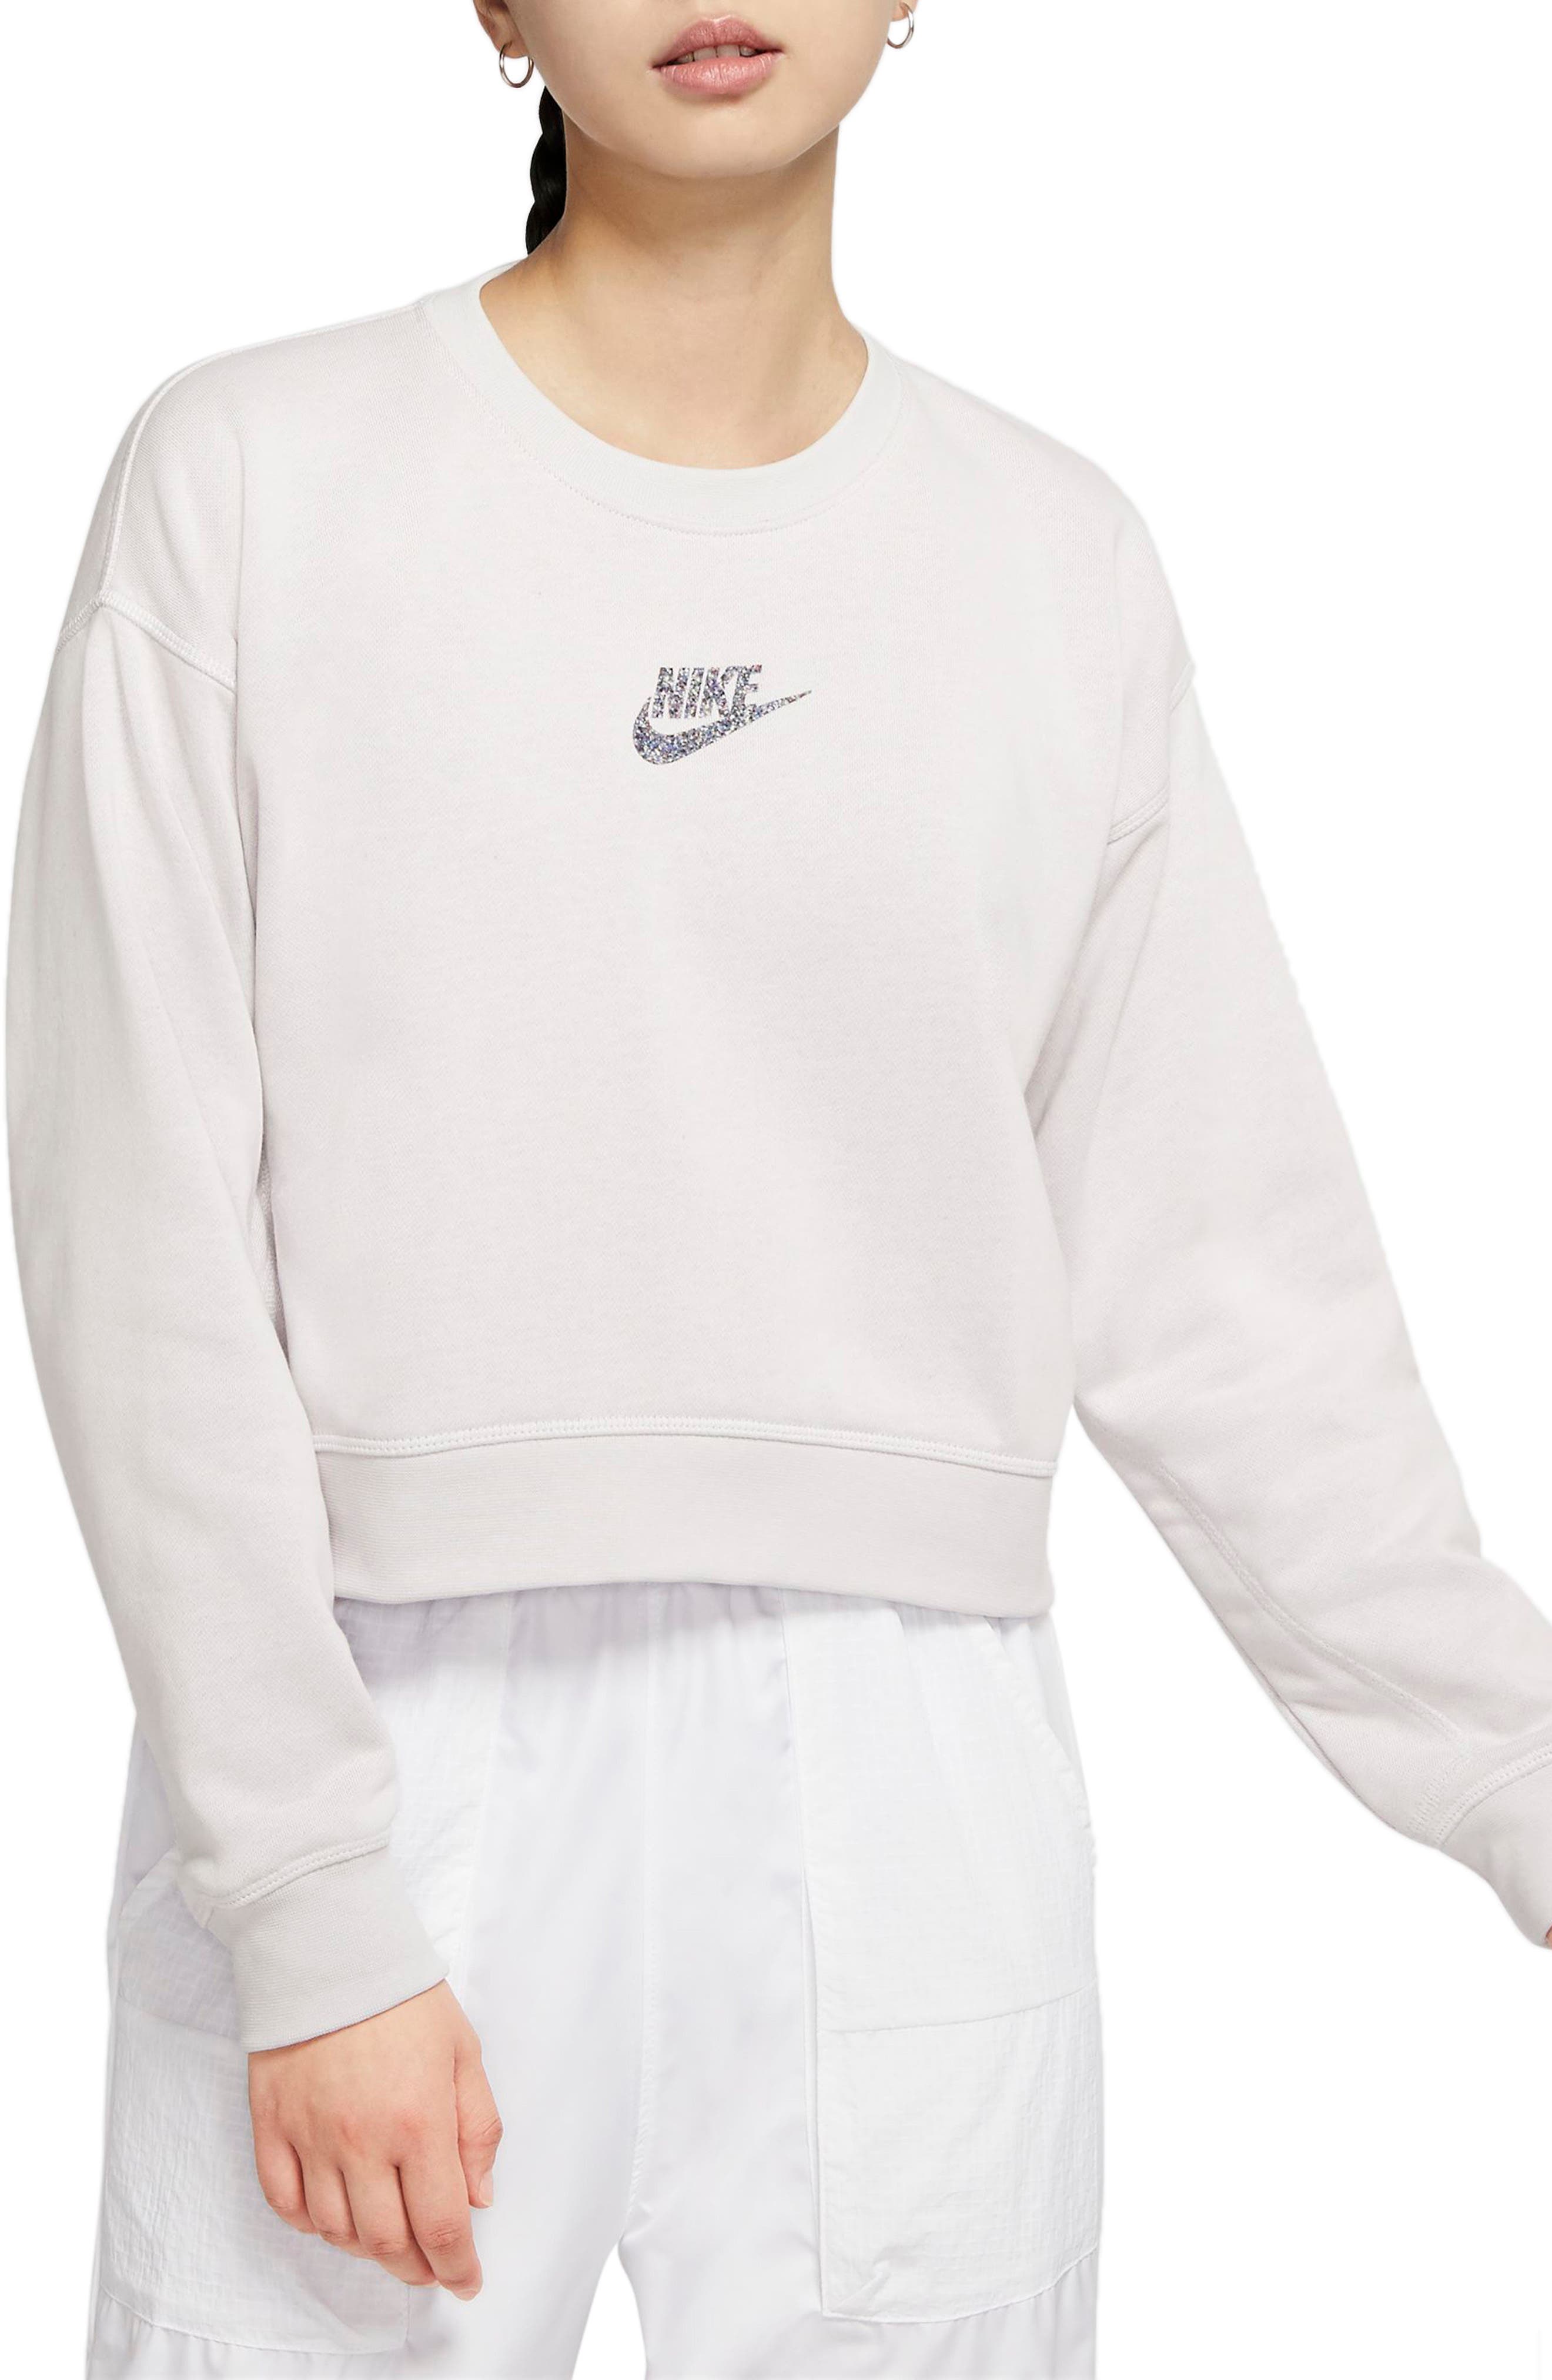 womens nike white sweatshirt